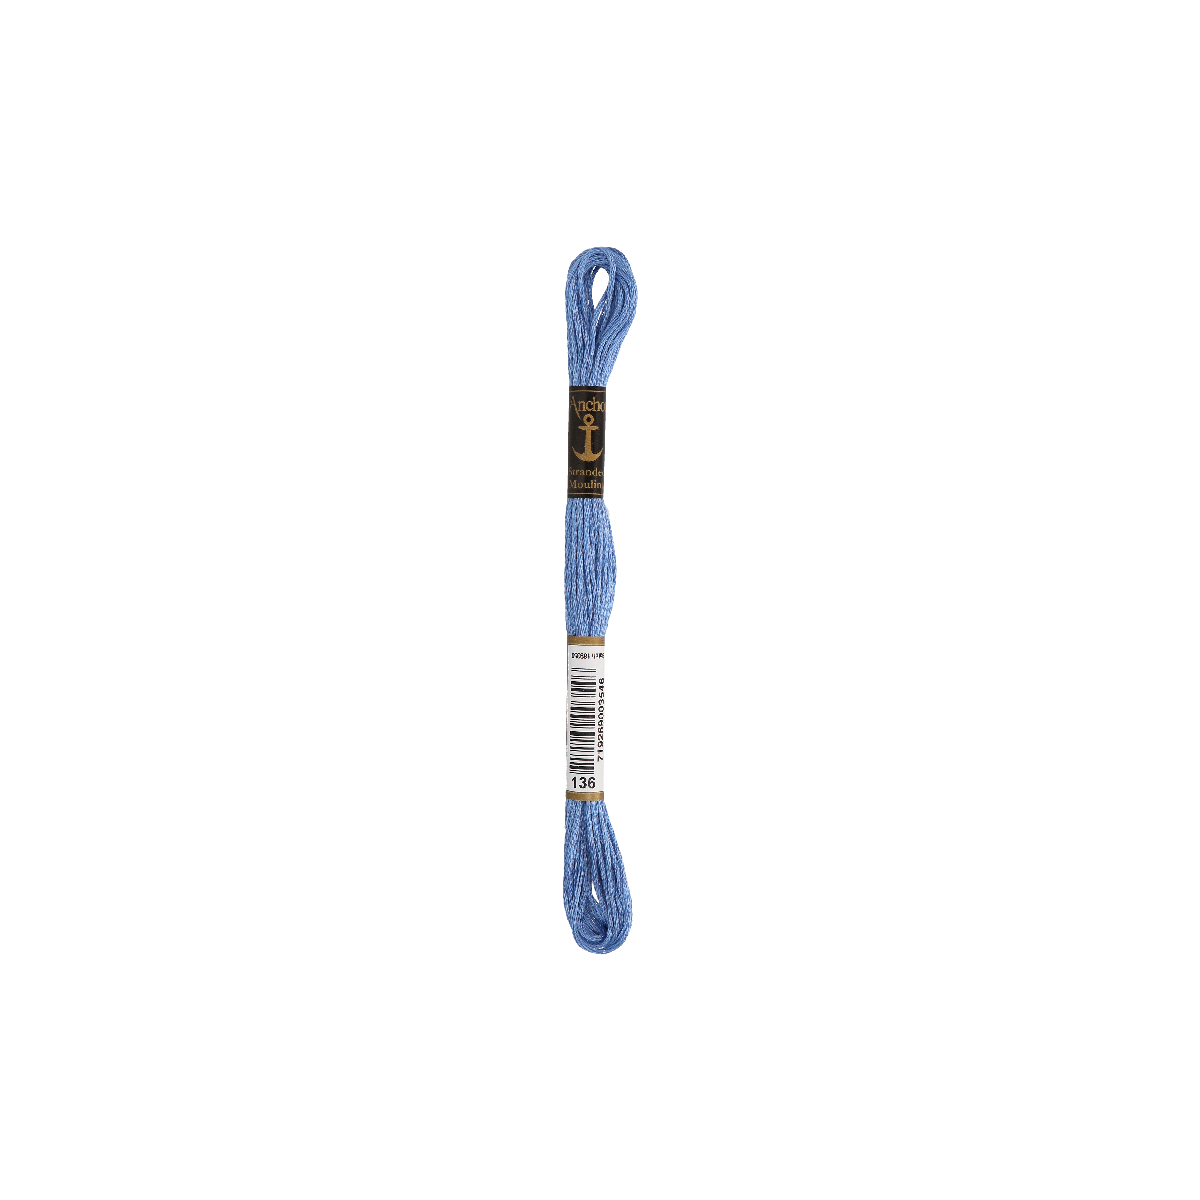 Anchor 8m, bleuet, coton, couleur 136, 6 fils